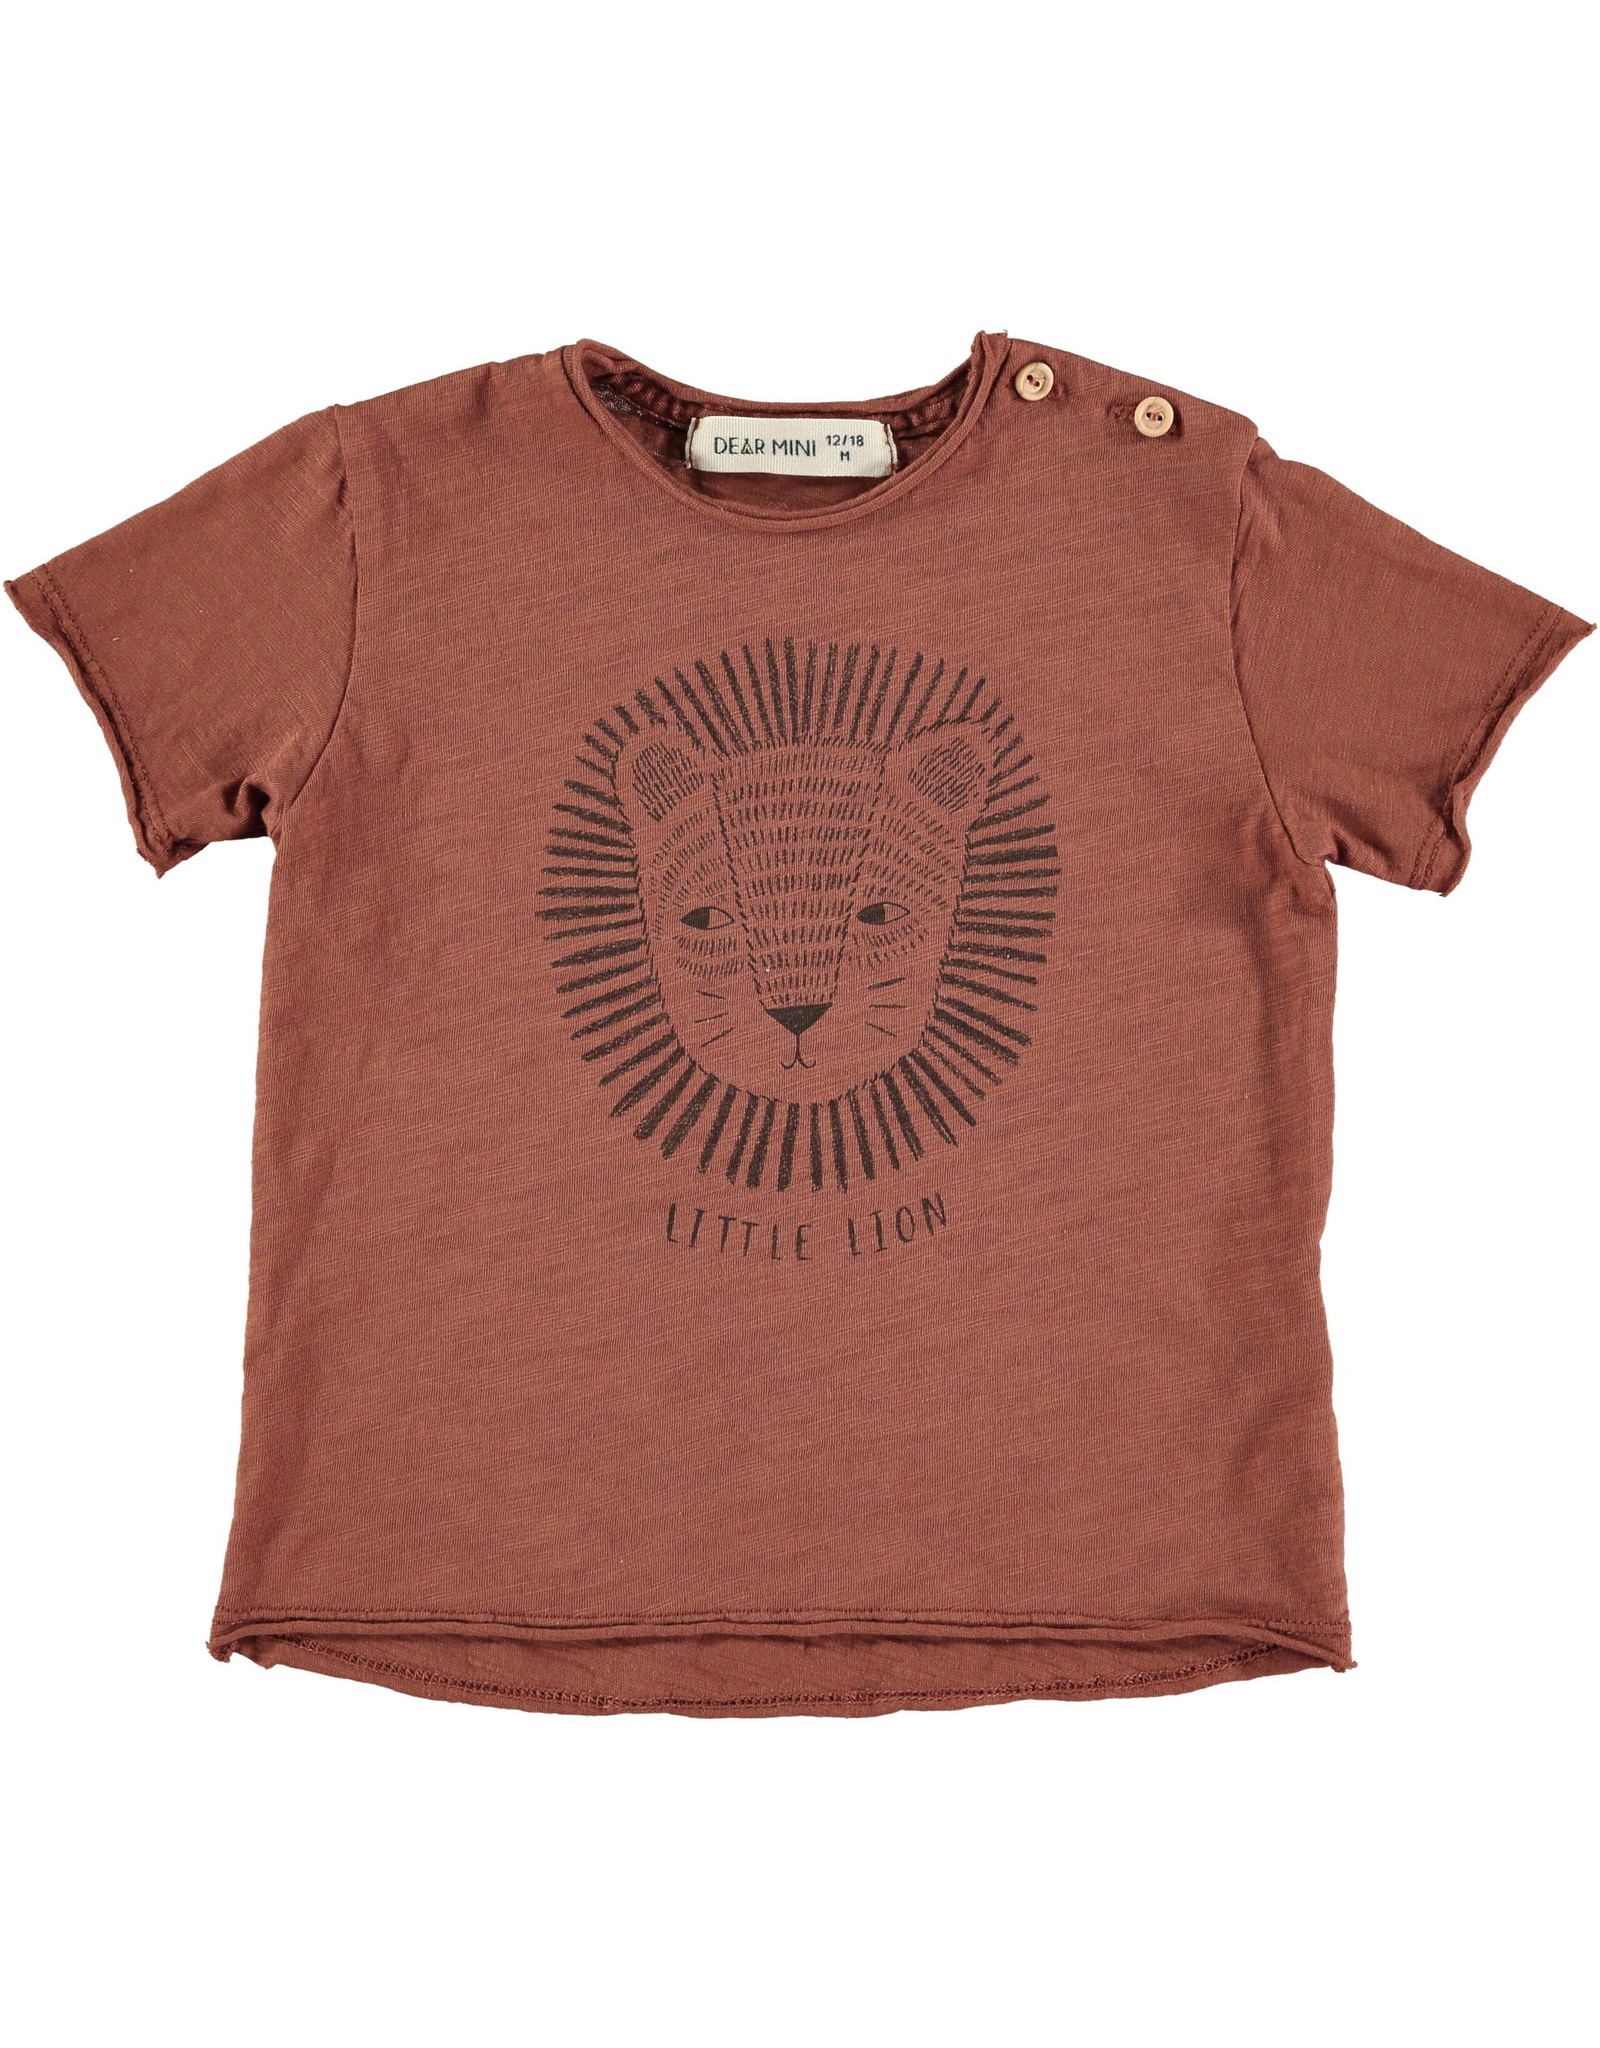 Dear Mini Lion T-Shirt / Terra